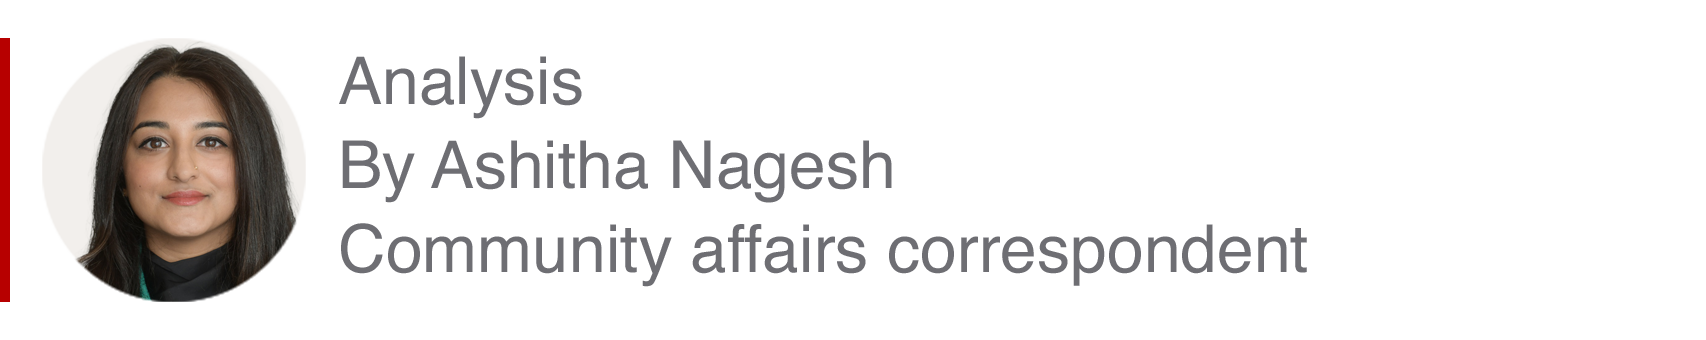 Блок анализа Ашиты Нагеш, корреспондента по связям с общественностью